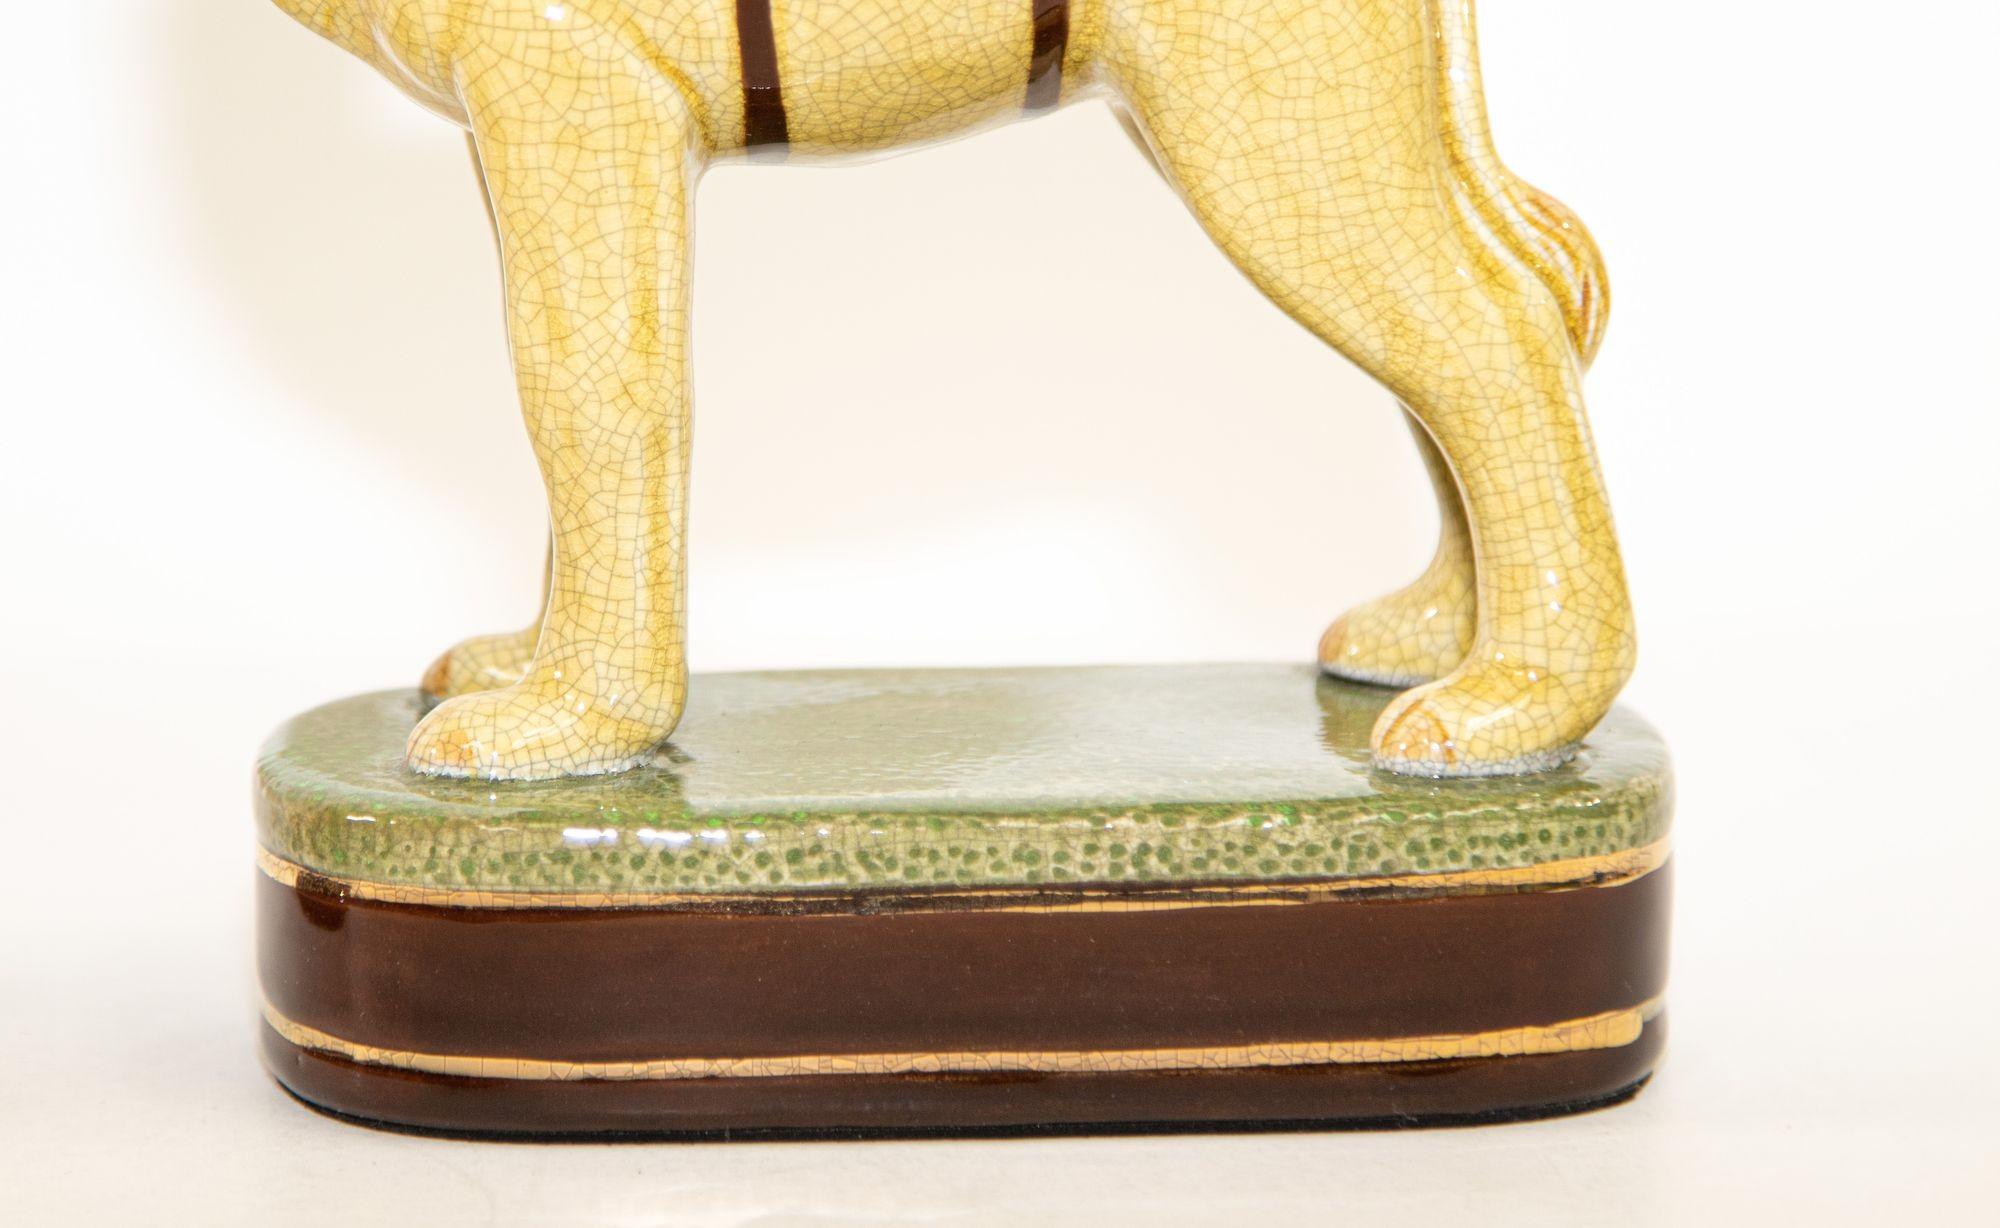 Hand-Crafted Vintage Porcelain Camel Sculptures Figurines Bookends For Sale